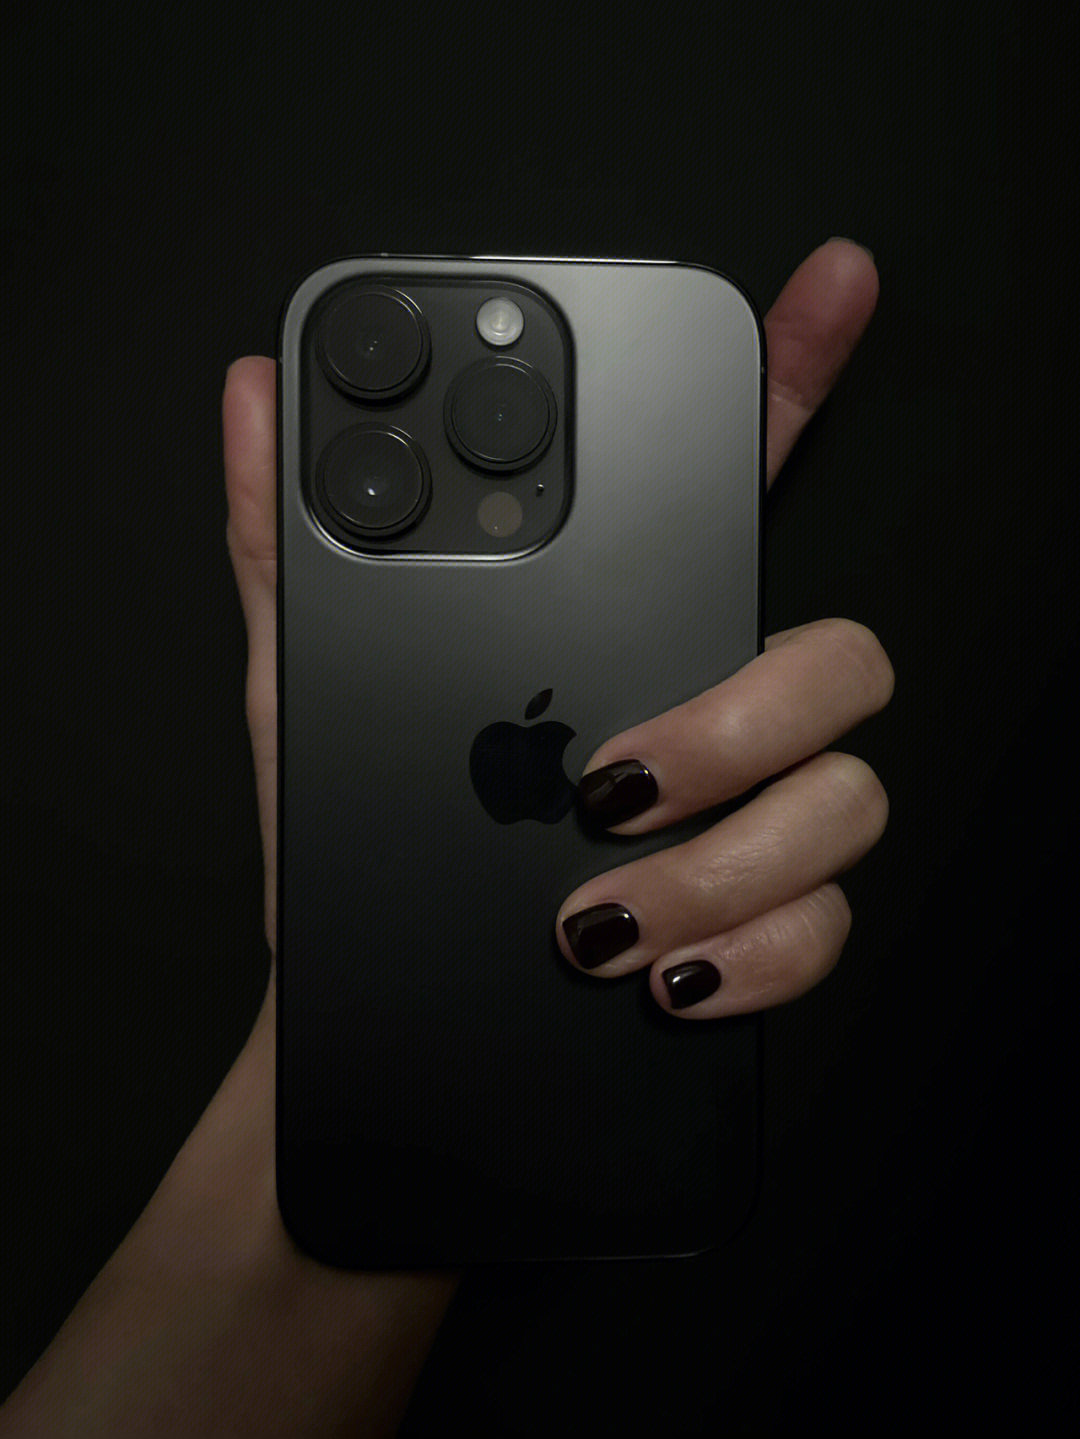 14pro黑色是目前最喜欢的iphone黑色版本